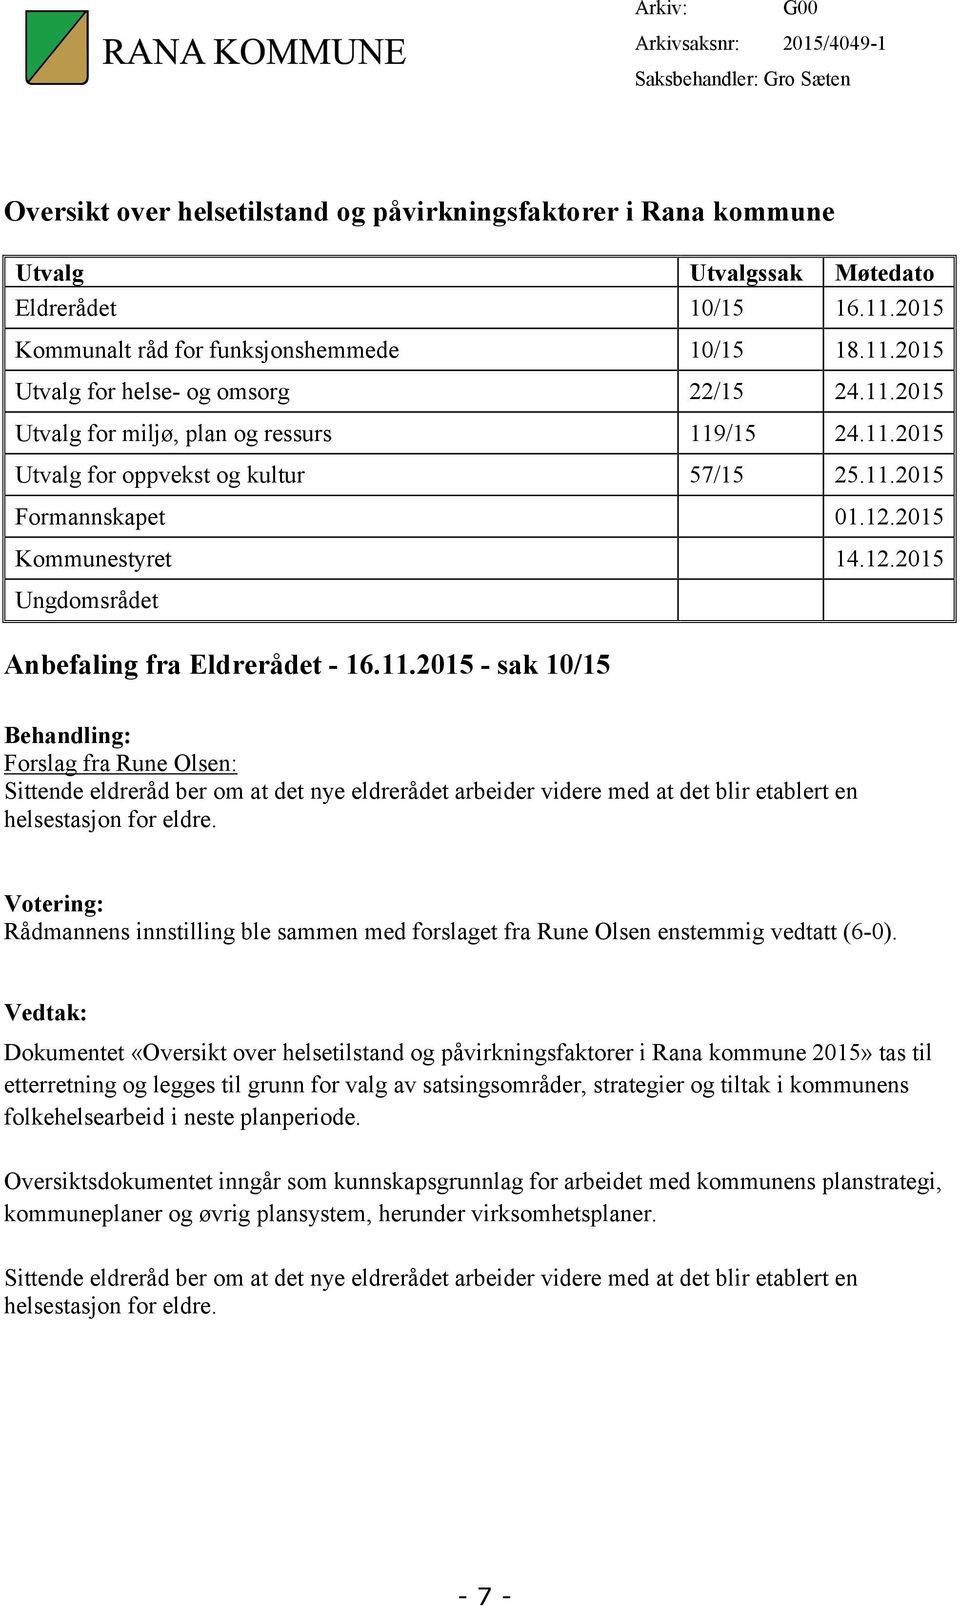 12.2015 Kommunestyret 14.12.2015 Ungdomsrådet Anbefaling fra Eldrerådet - 16.11.